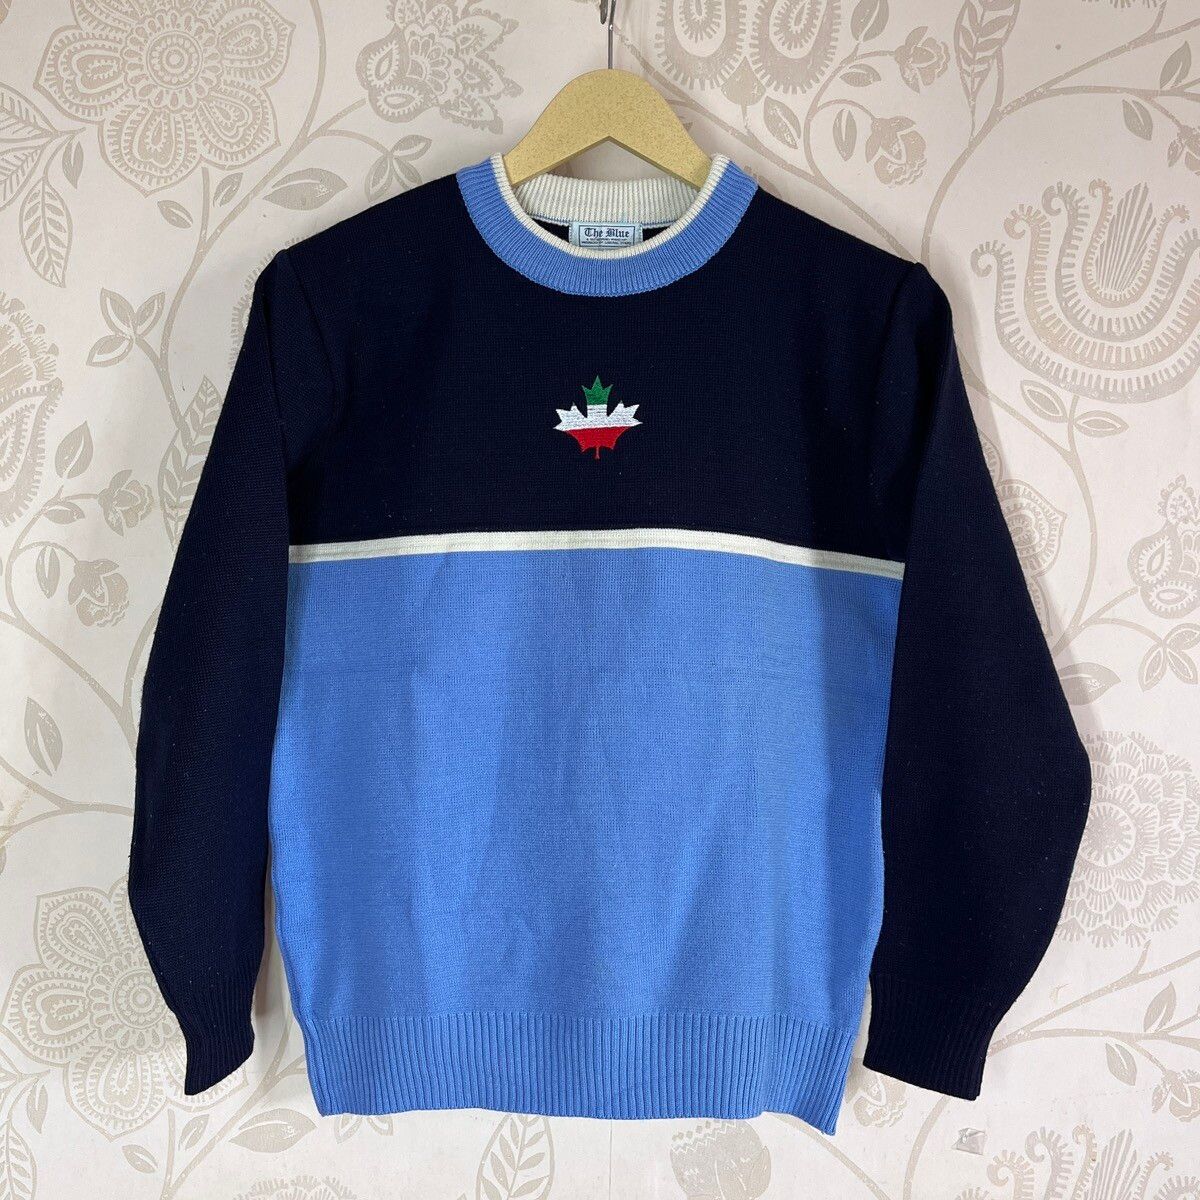 Japan Blue - Vintage Blue Sweater Knitwear Japan - 1